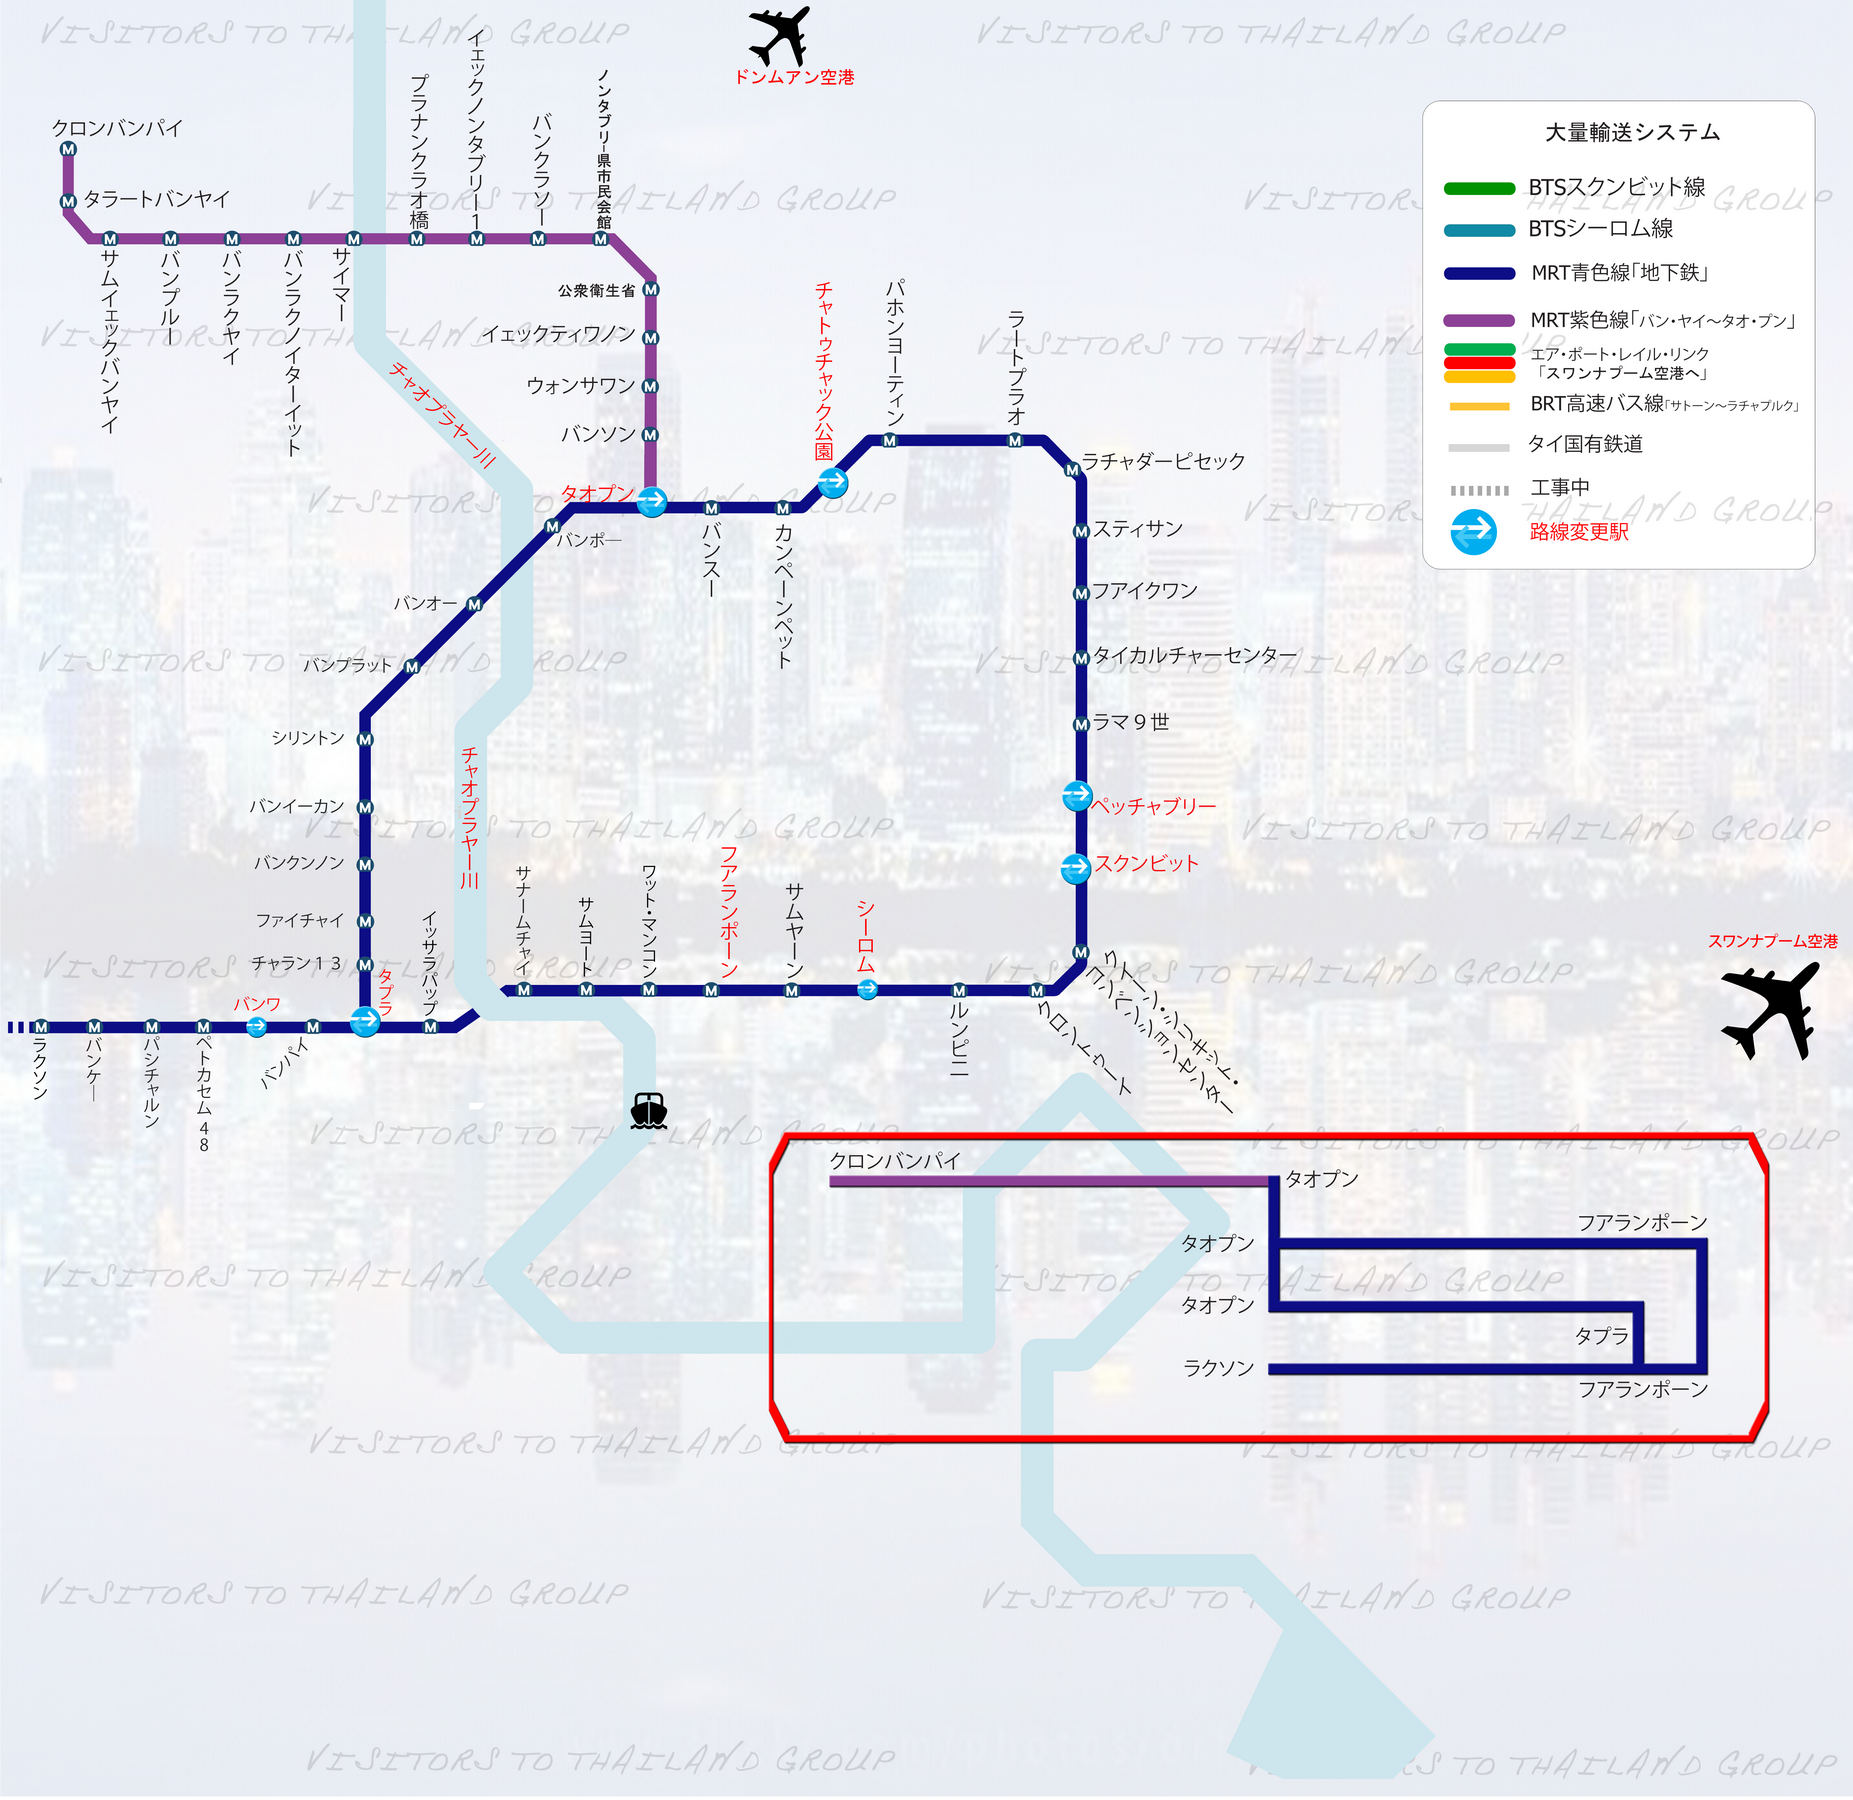 Bangkok Mass Transit System Map